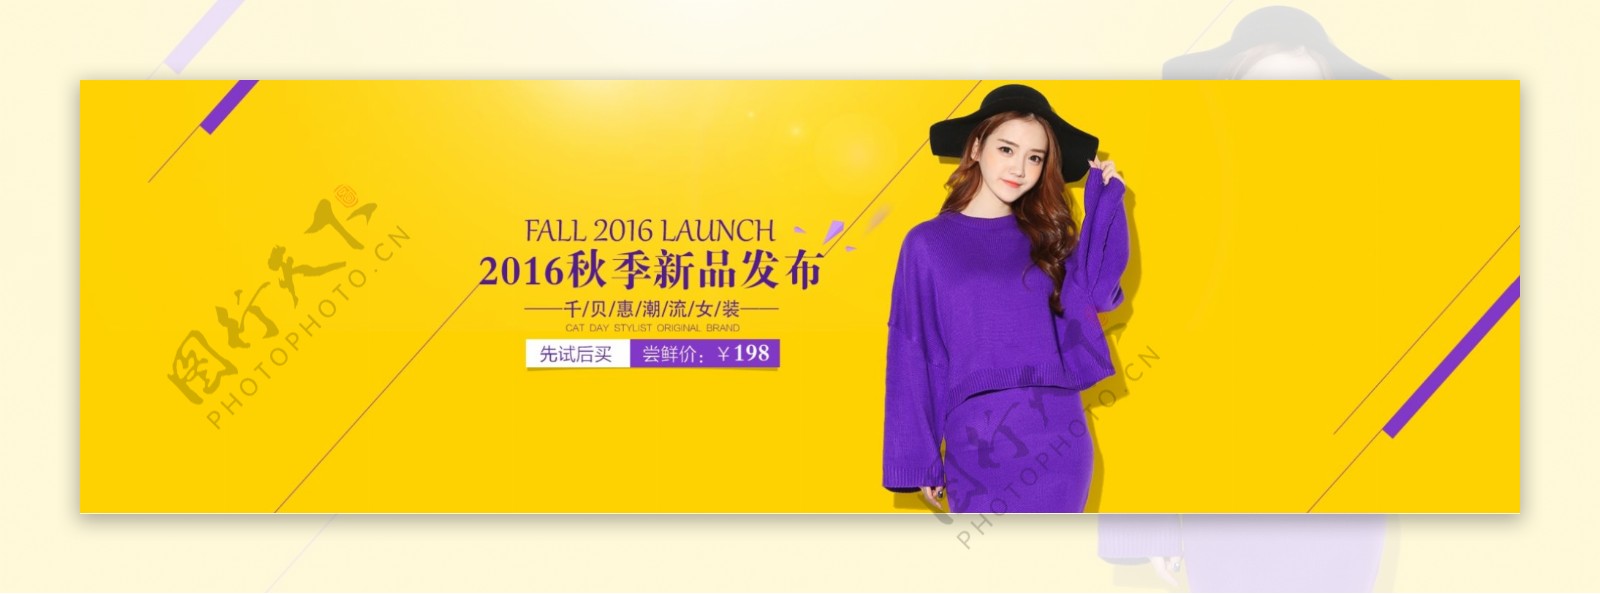 千贝惠女装2016秋季新品发布海报